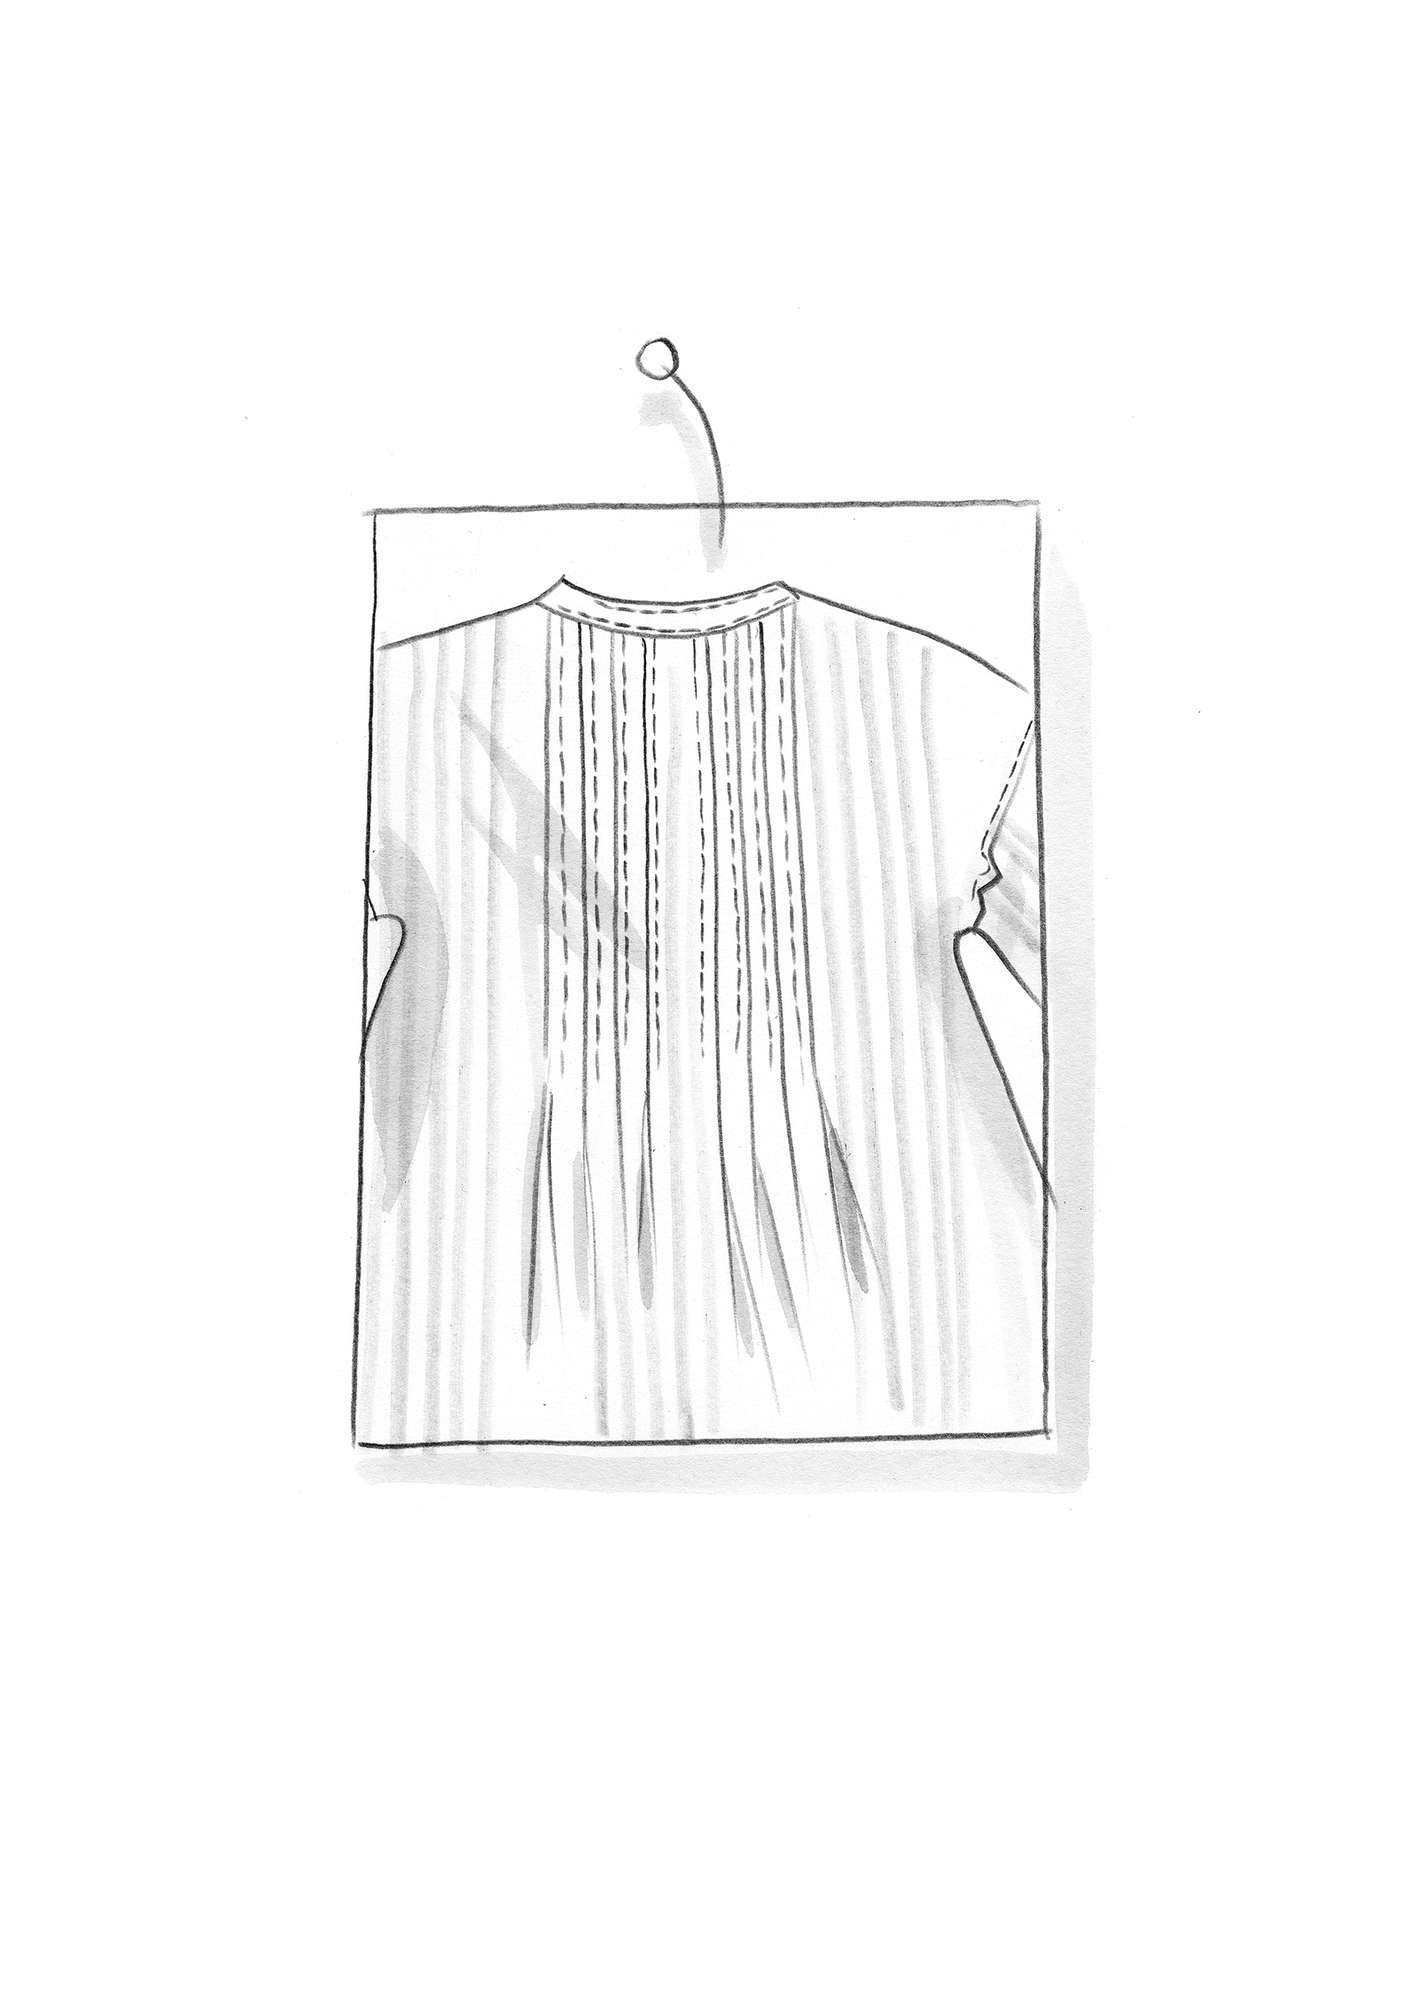 “Serafina” woven organic cotton dress kiwi/patterned